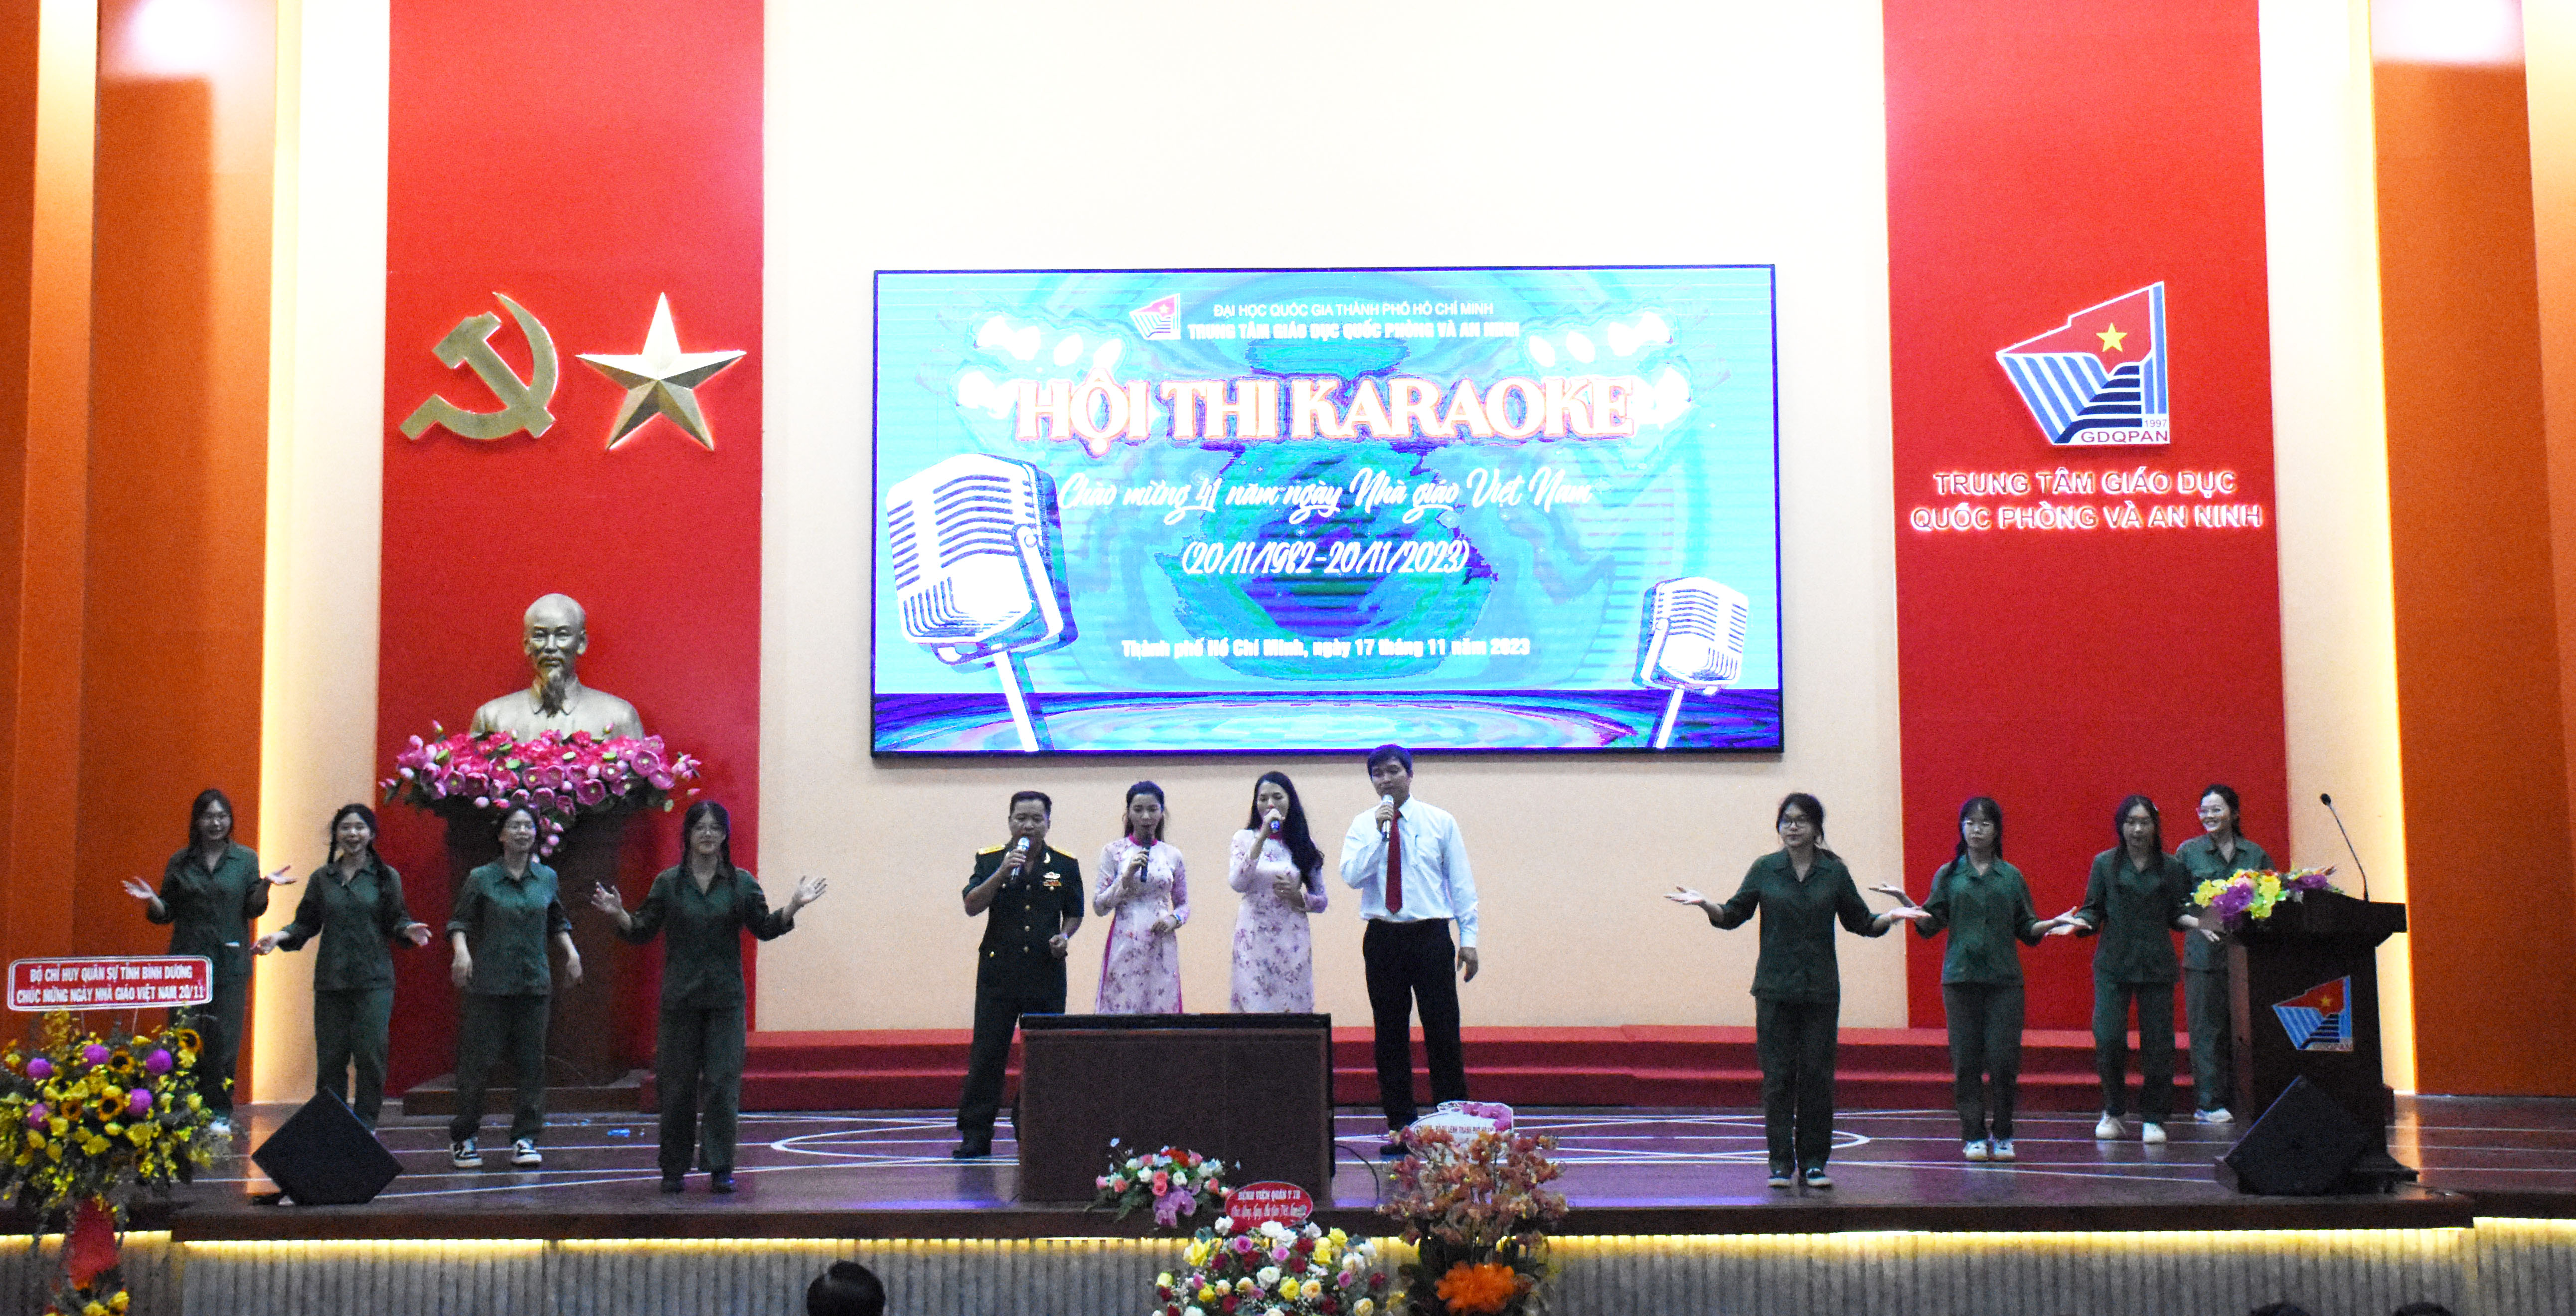 Công đoàn Trung tâm tổ chức Hội thi karaoke chào mừng Ngày Nhà giáo Việt Nam 20/11/2023